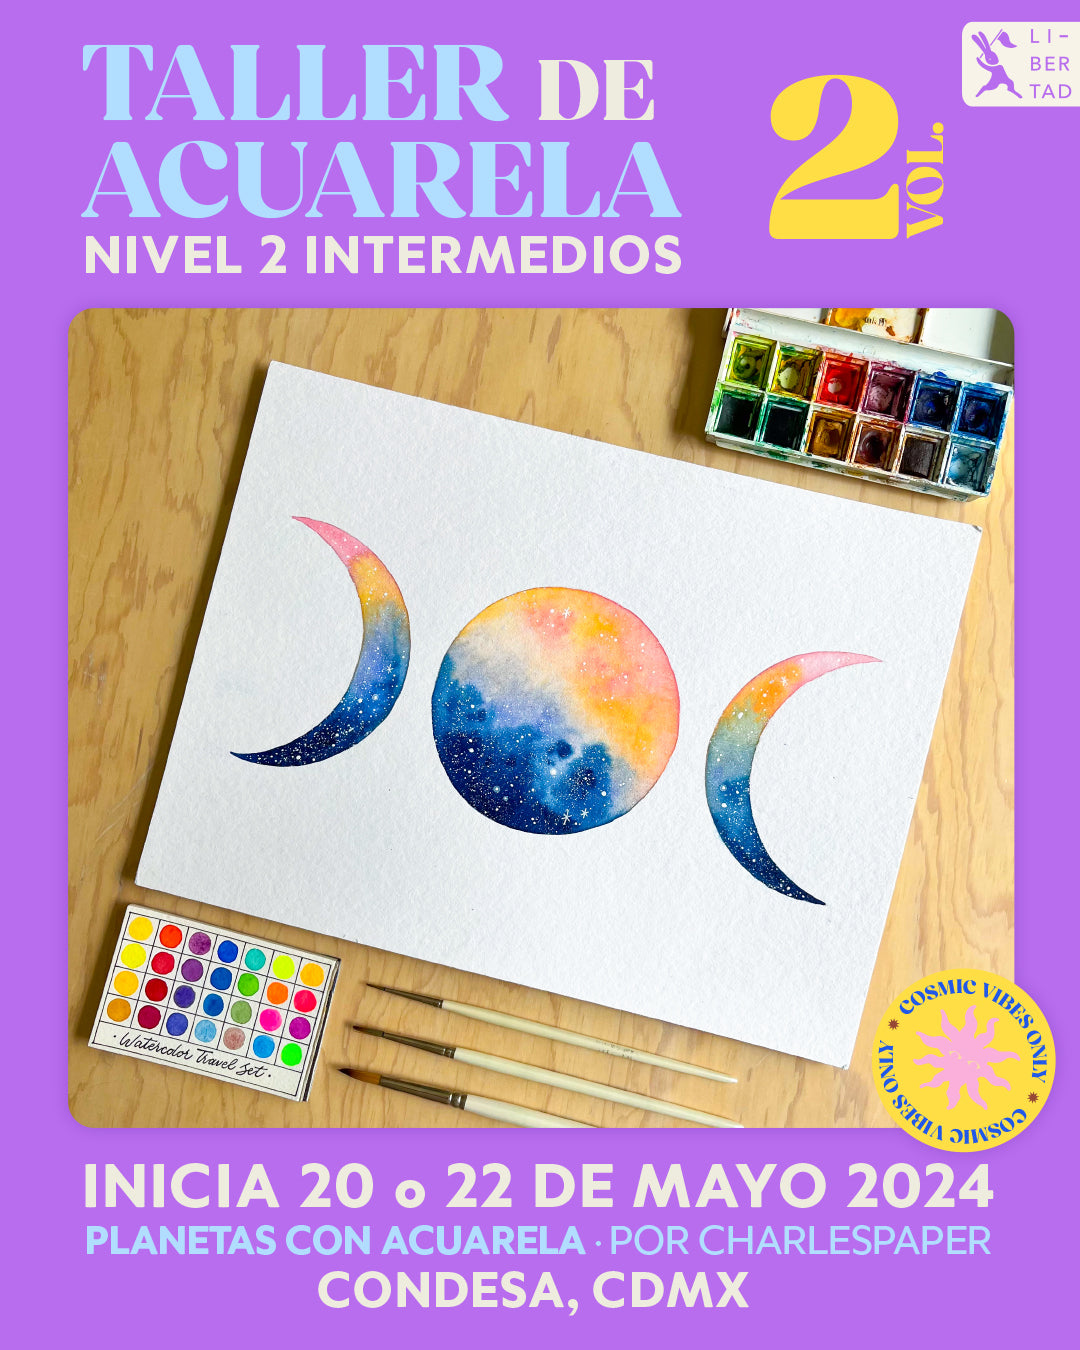 🎨 Planetas con Acuarela✨ Cosmic Vibes Only Nivel 2 (intermedios) con @ charlespaper · INICIA 20 y 22 de MAYO